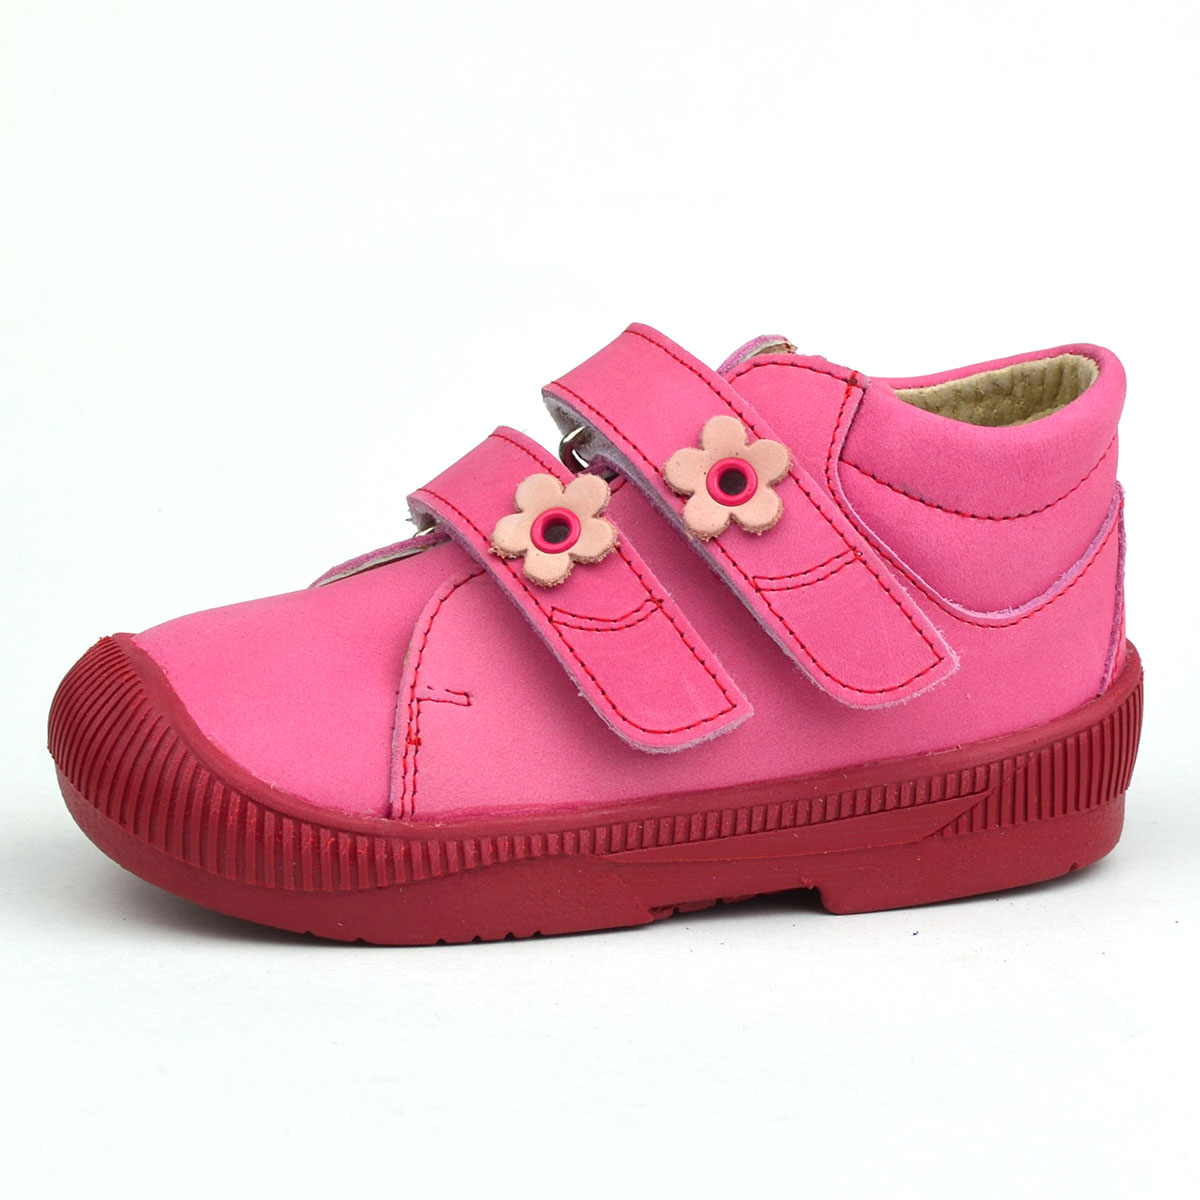 S20 Maus kislánycipő rózsaszínben, virágokkal a tépőzáron